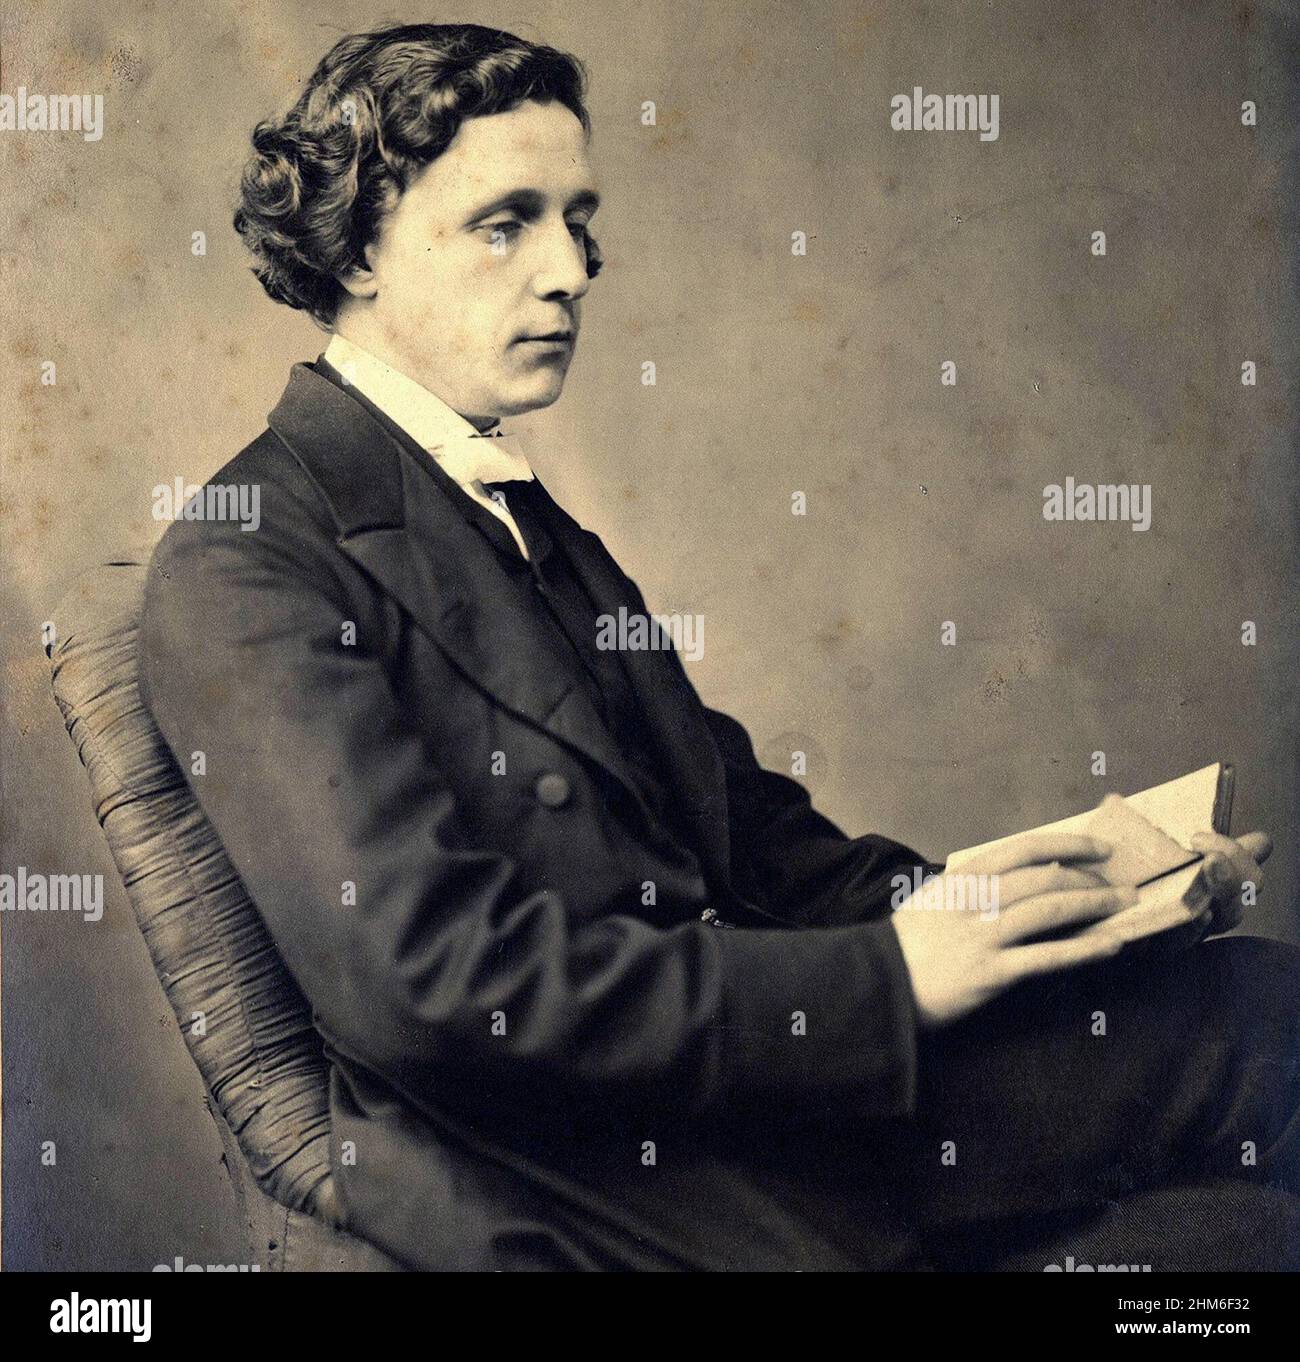 Un ritratto dell'autore Lewis Carroll (vero nome Charles Lutwidge Dodgson), autore di Alice nel paese delle meraviglie, dal 1863 quando aveva 31 anni Foto Stock